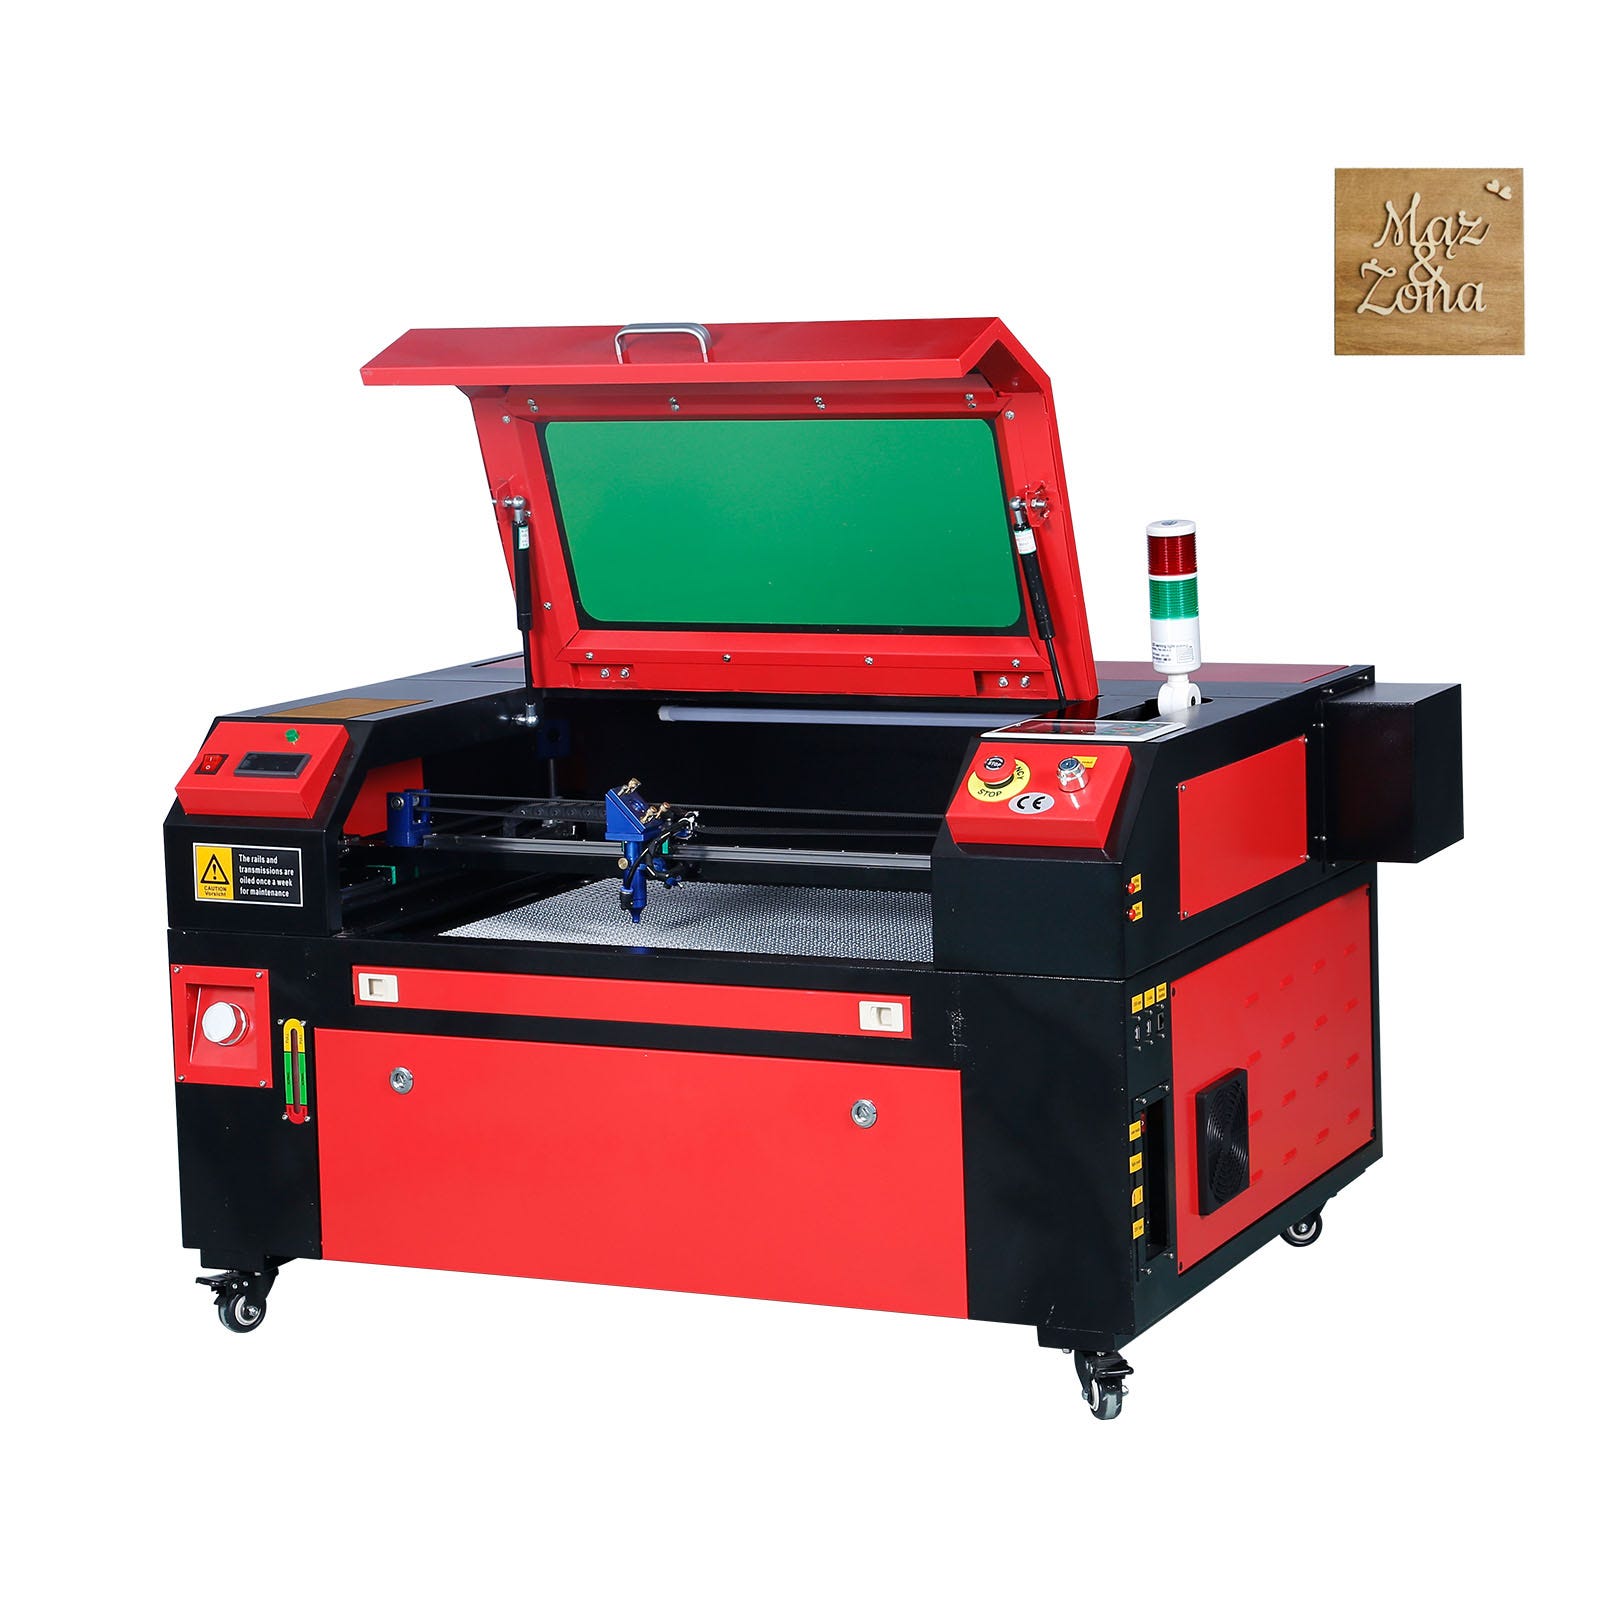 VEVOR Graveur Laser CO2 60 W Machine de Gravure Decoupe Table de Travail  400x600 mm Vitesse Gravure 0-800 mm/s Decoupe 0-500 mm/s Epaisseur Gravure  20